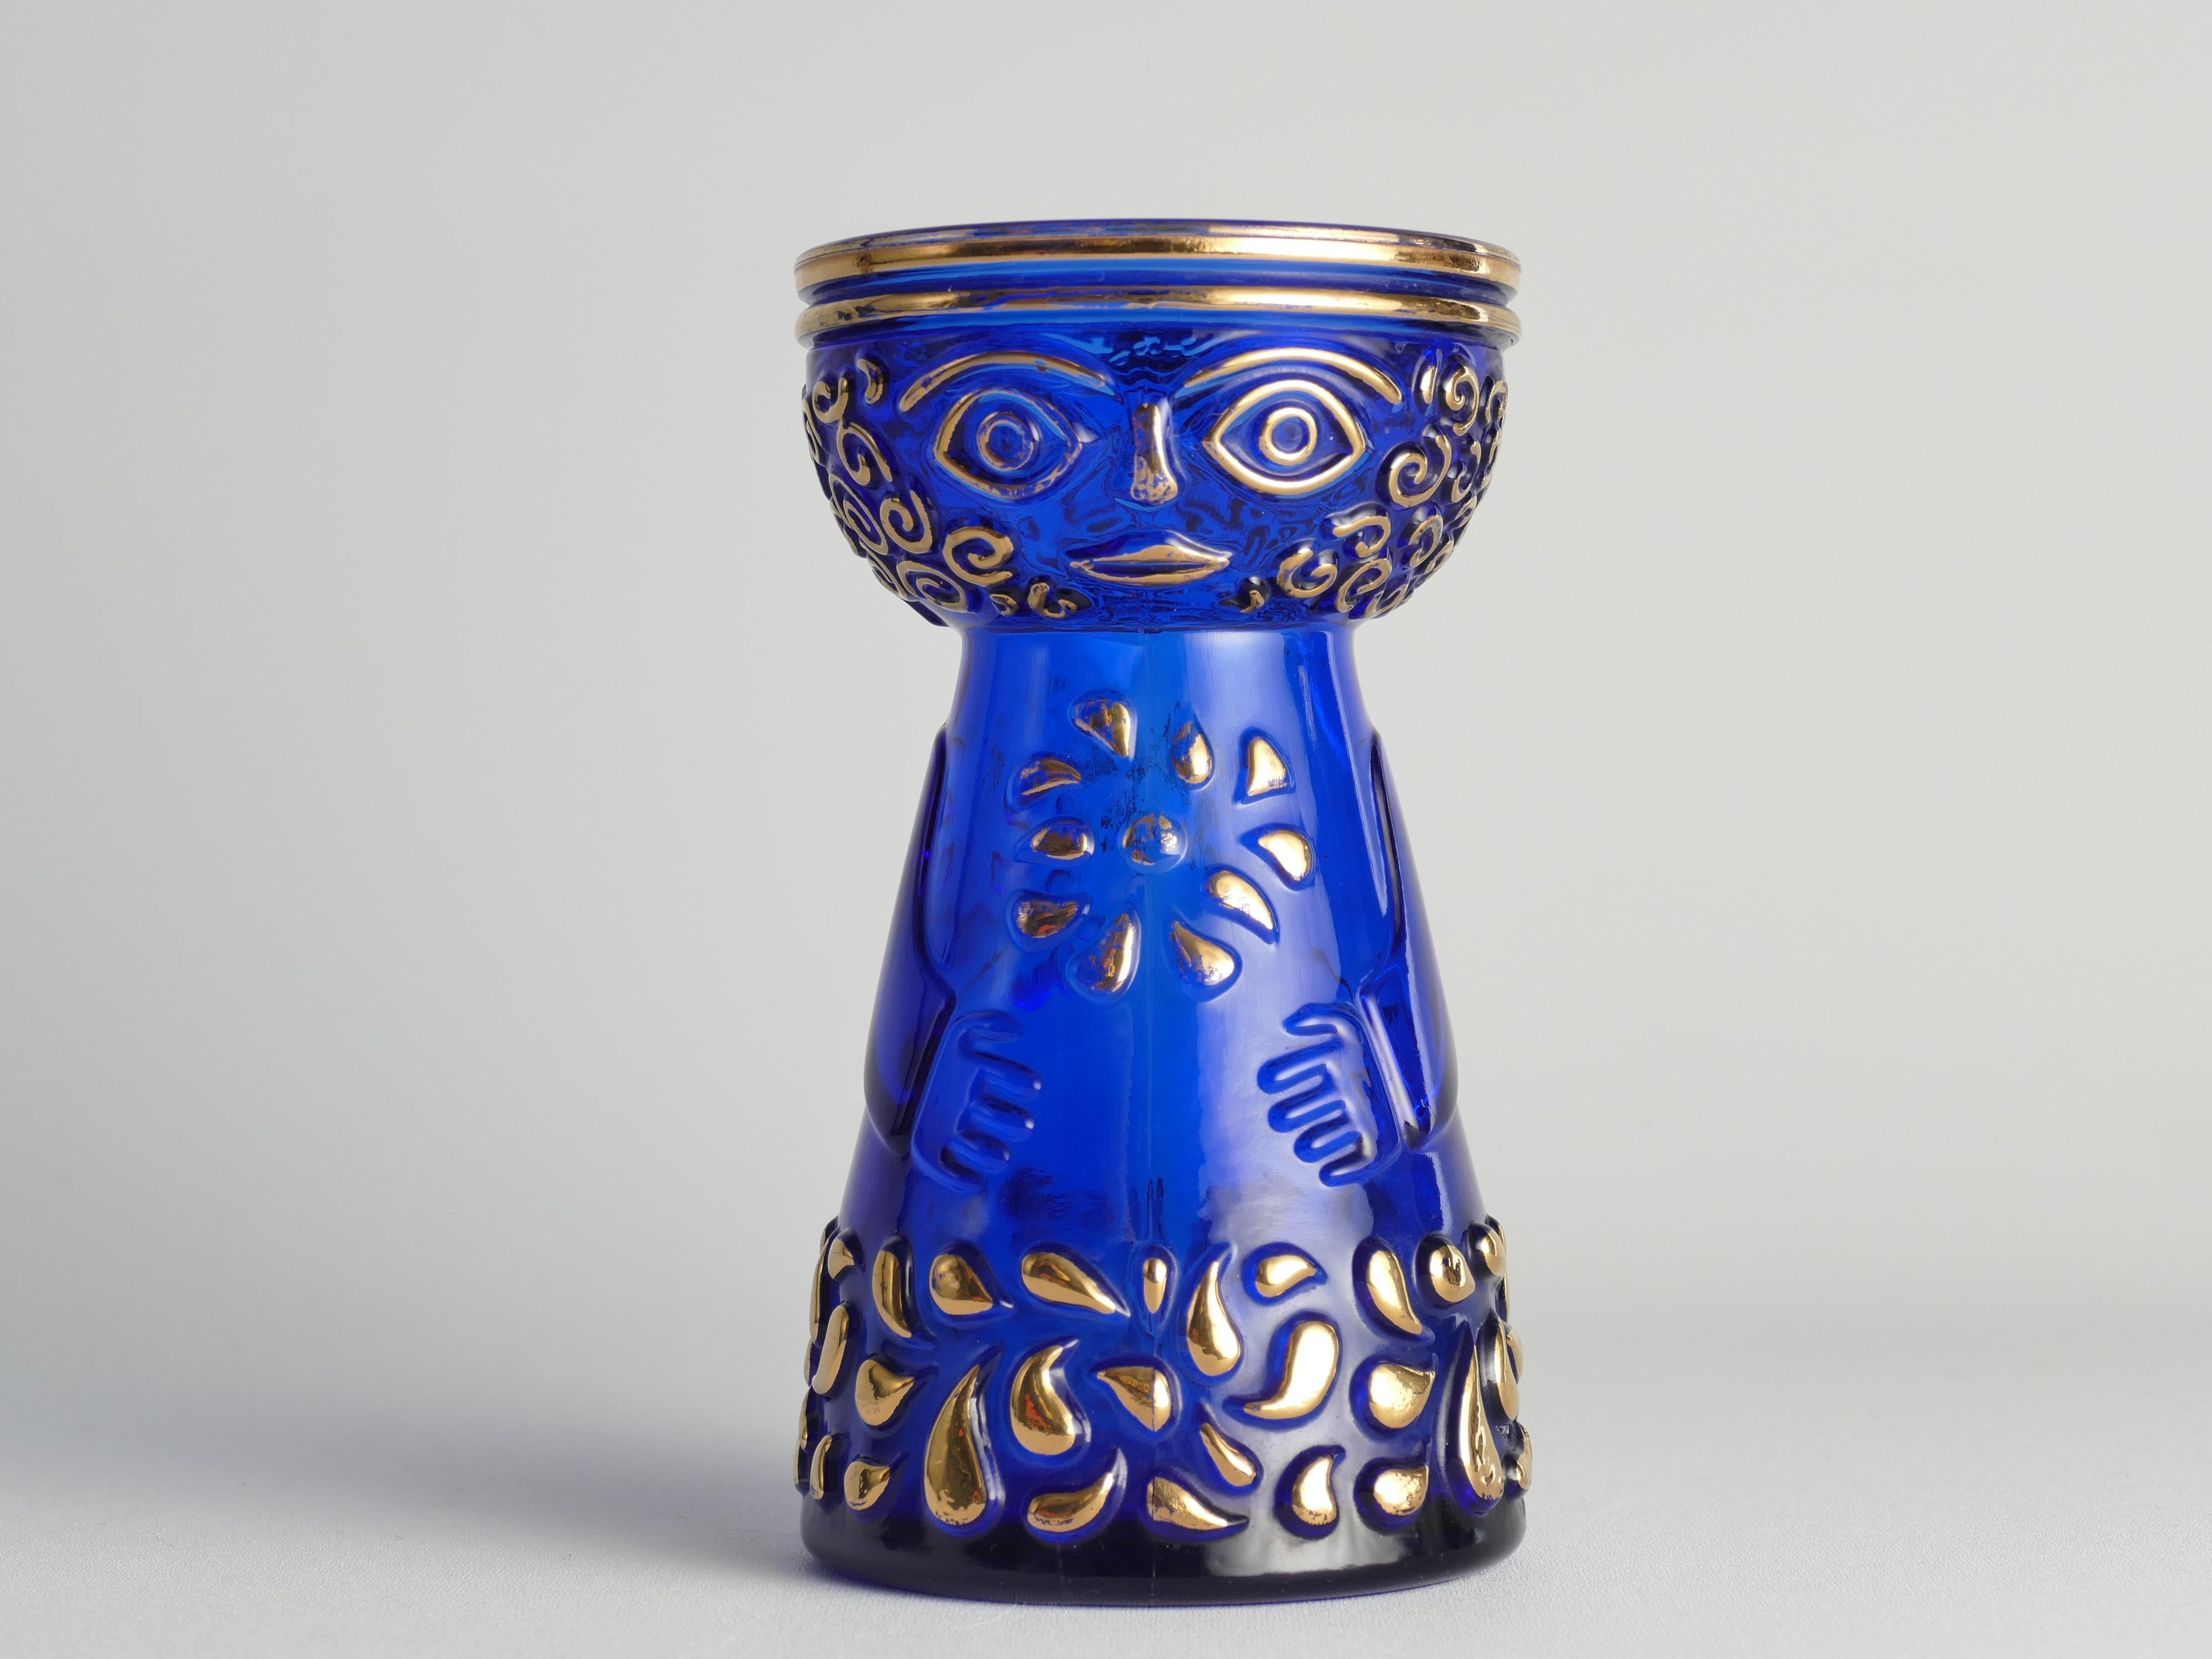 Ce vase bleu cobalt moderne du milieu du siècle, avec des accents dorés, ce vase de jacinthes enchanteur date des années 1970 et est un produit de Walther Glas. Clairement influencé par les designs de l'artiste danois Björn Wiinblad, le vase prend